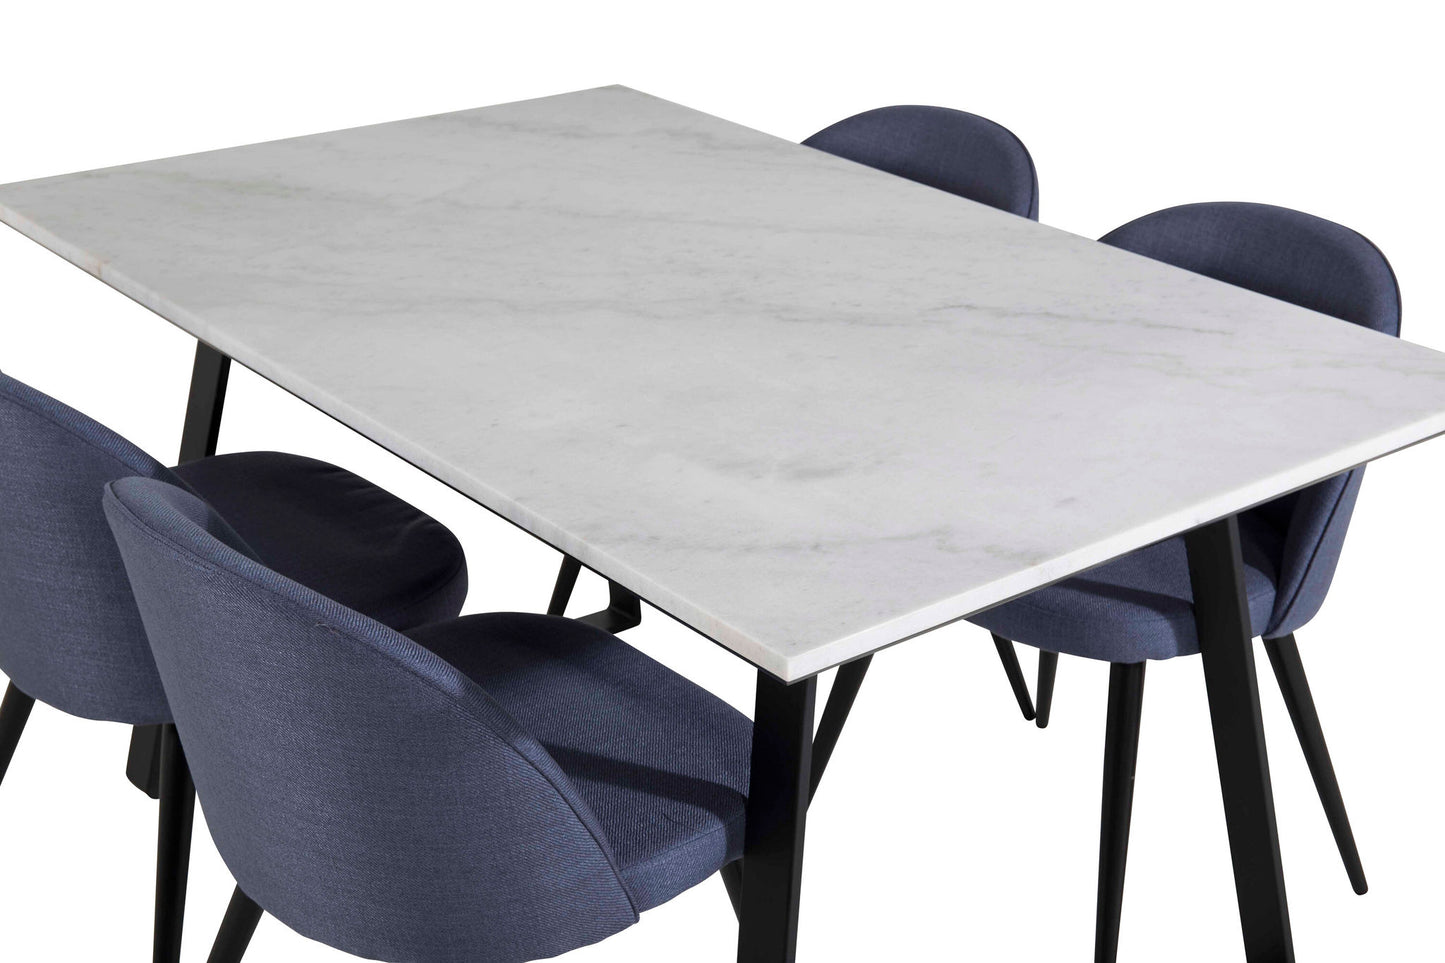 Estelle - Spisebord, 140*90 - Hvid / Sort+ velour Stol - Sorte ben - Blåt stof